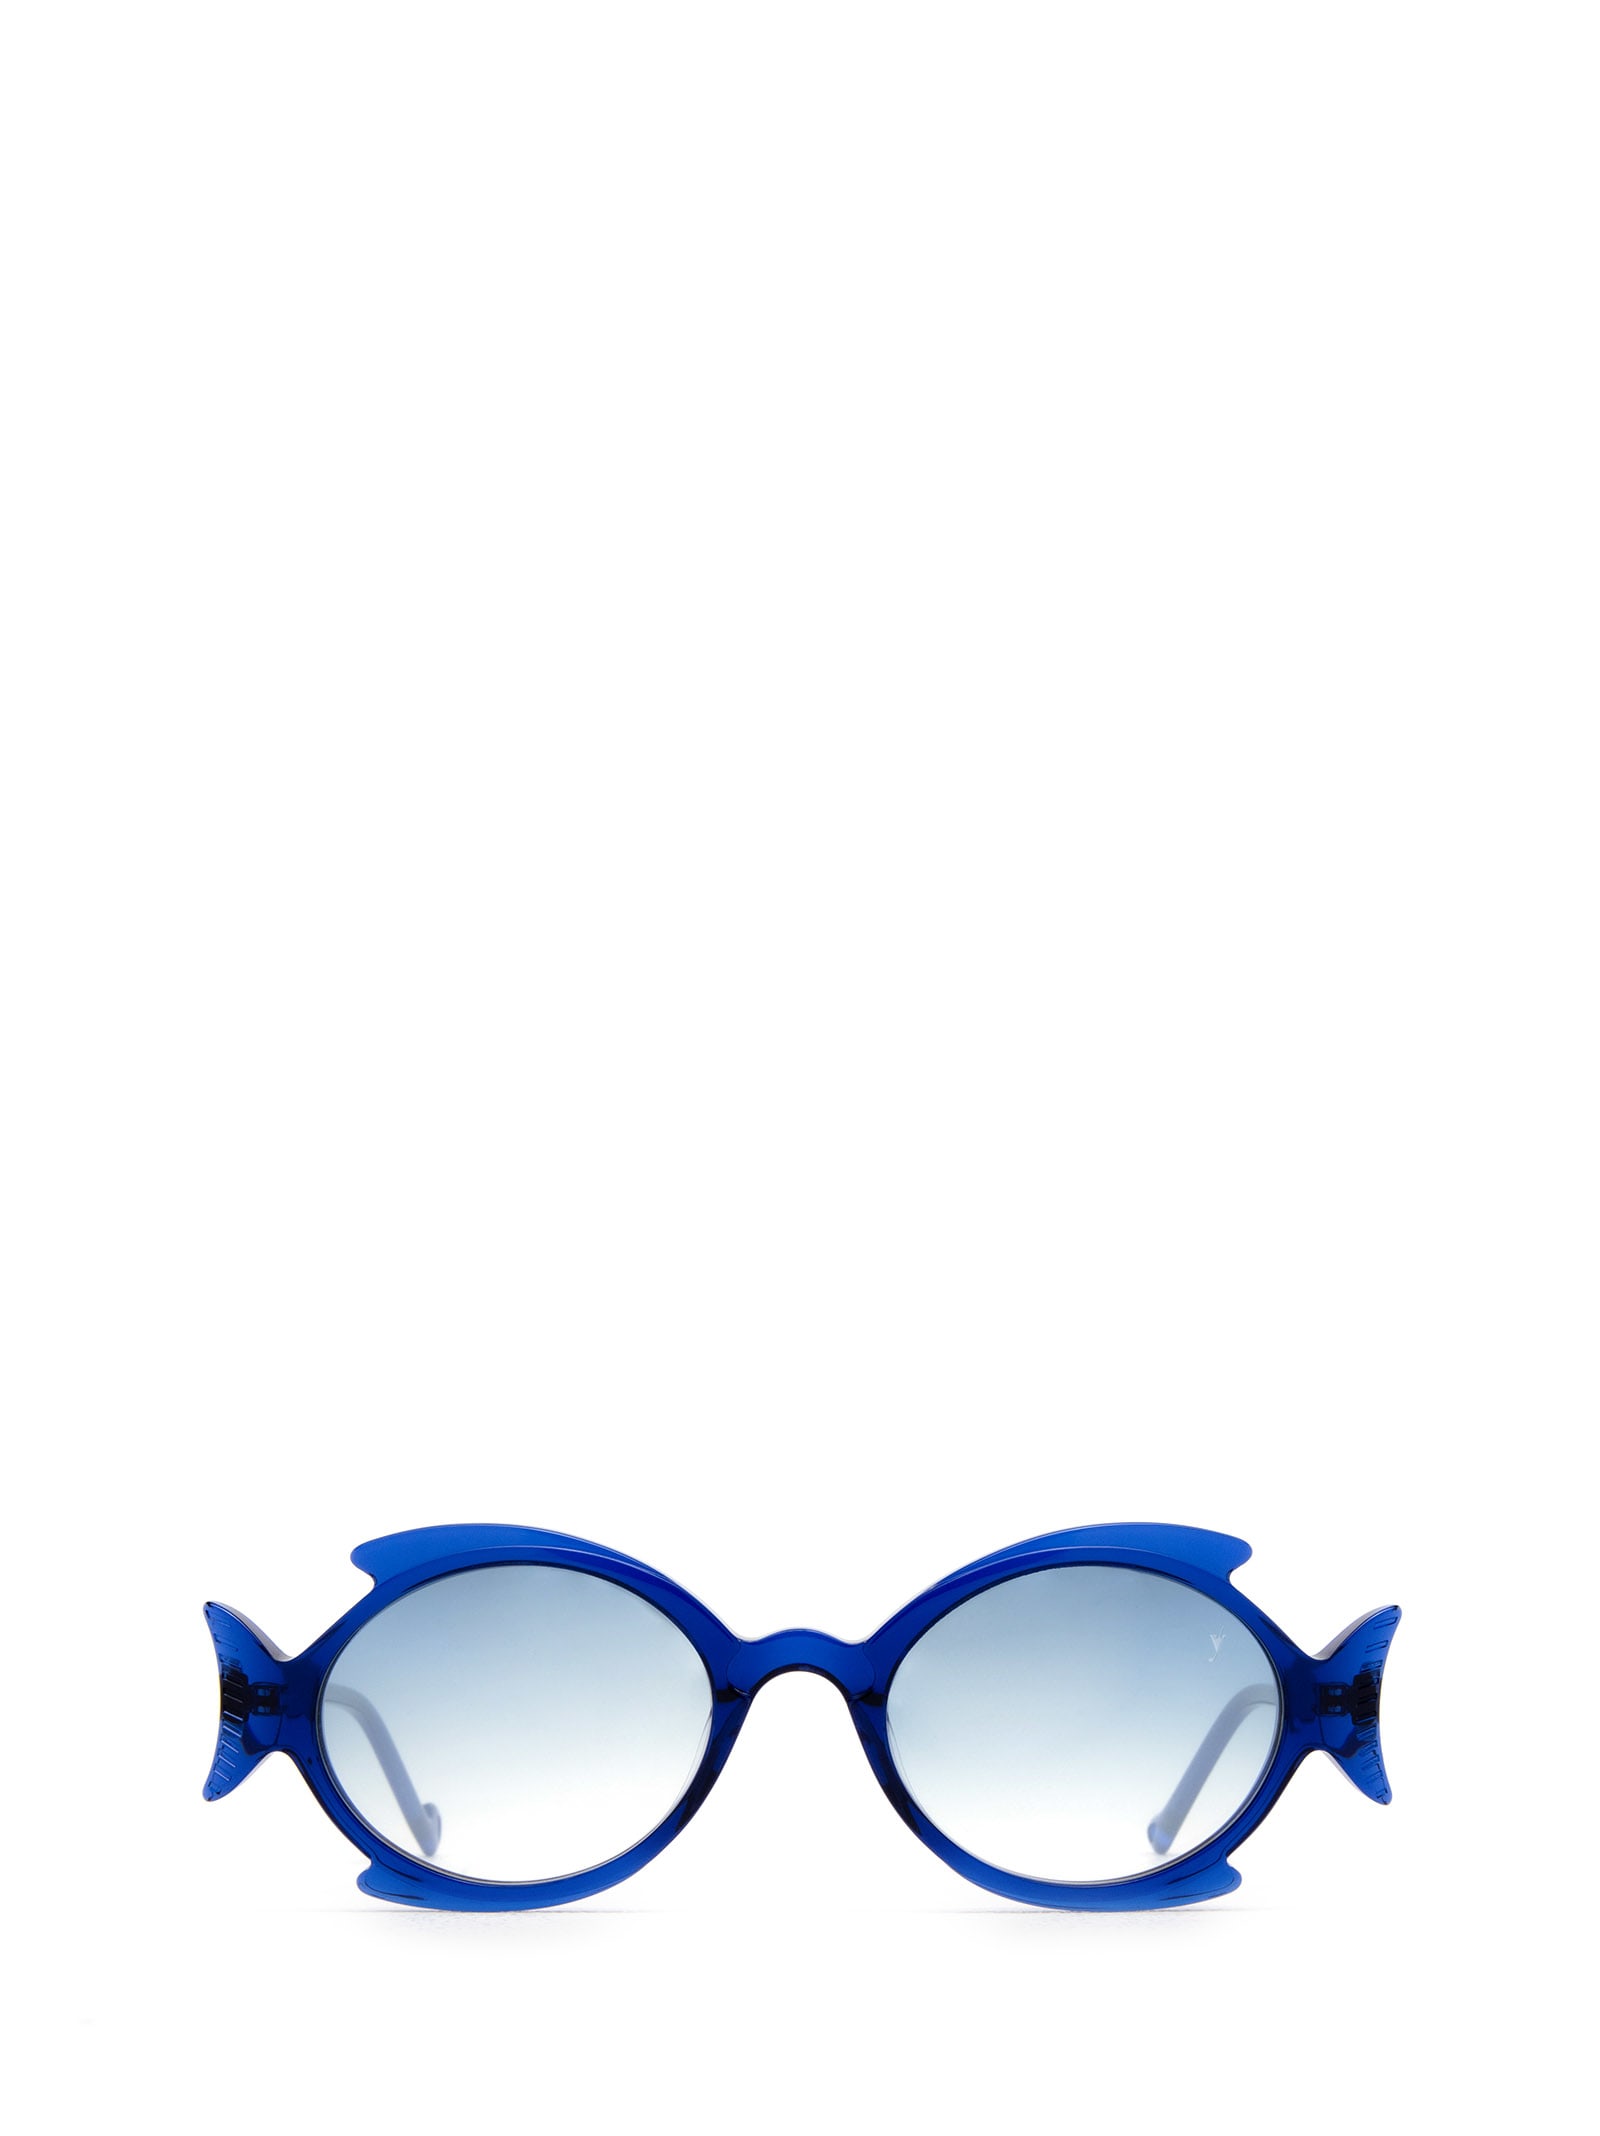 Shellie Transparent Blue Sunglasses